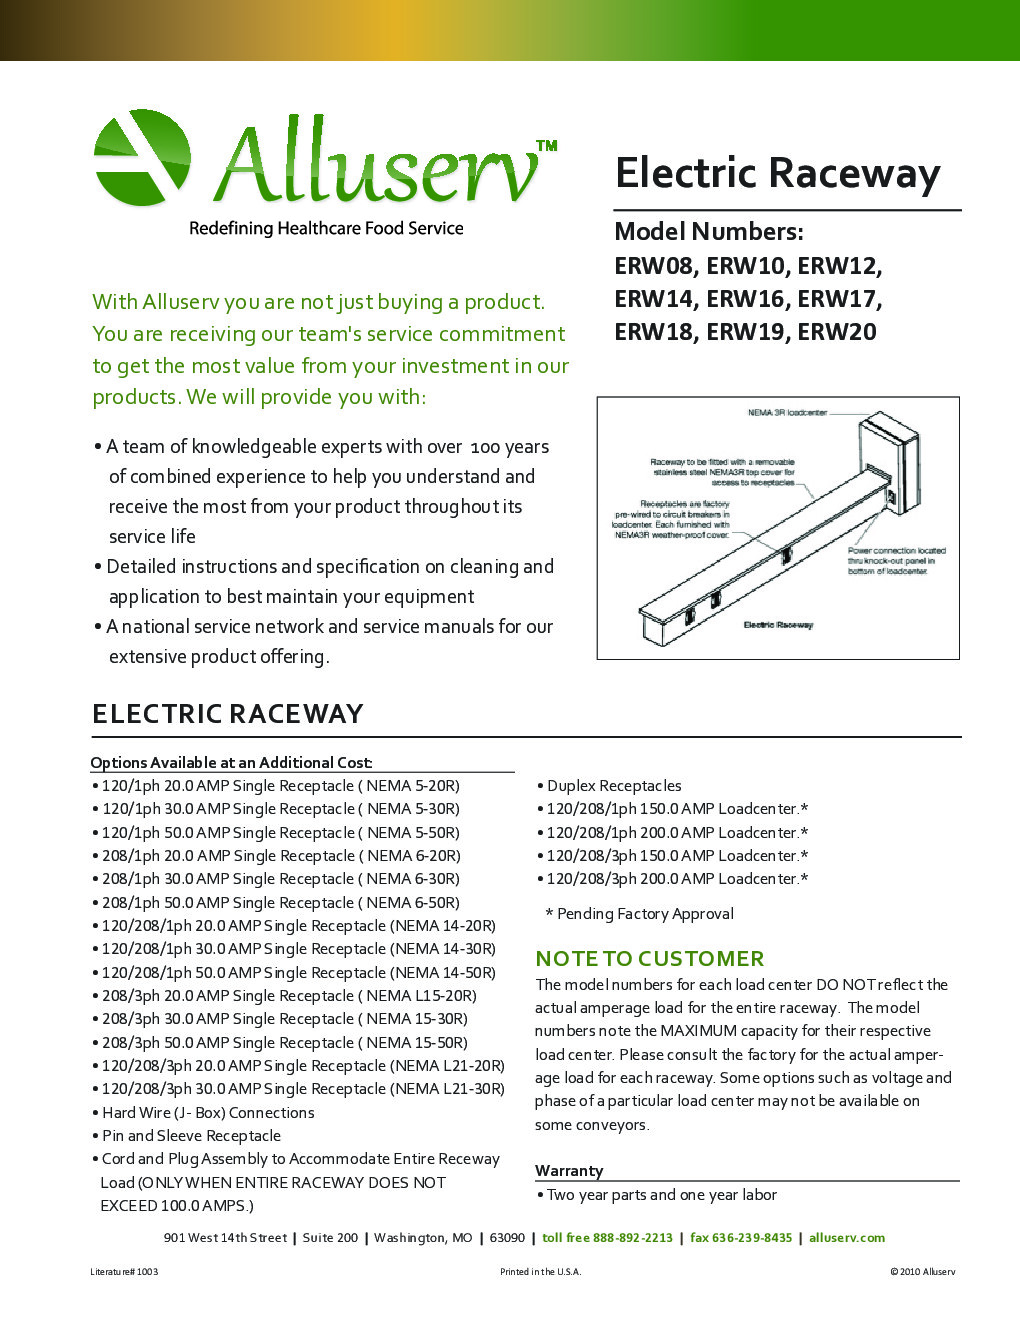 Alluserv ERW12 Electrical Raceway, 12 foot